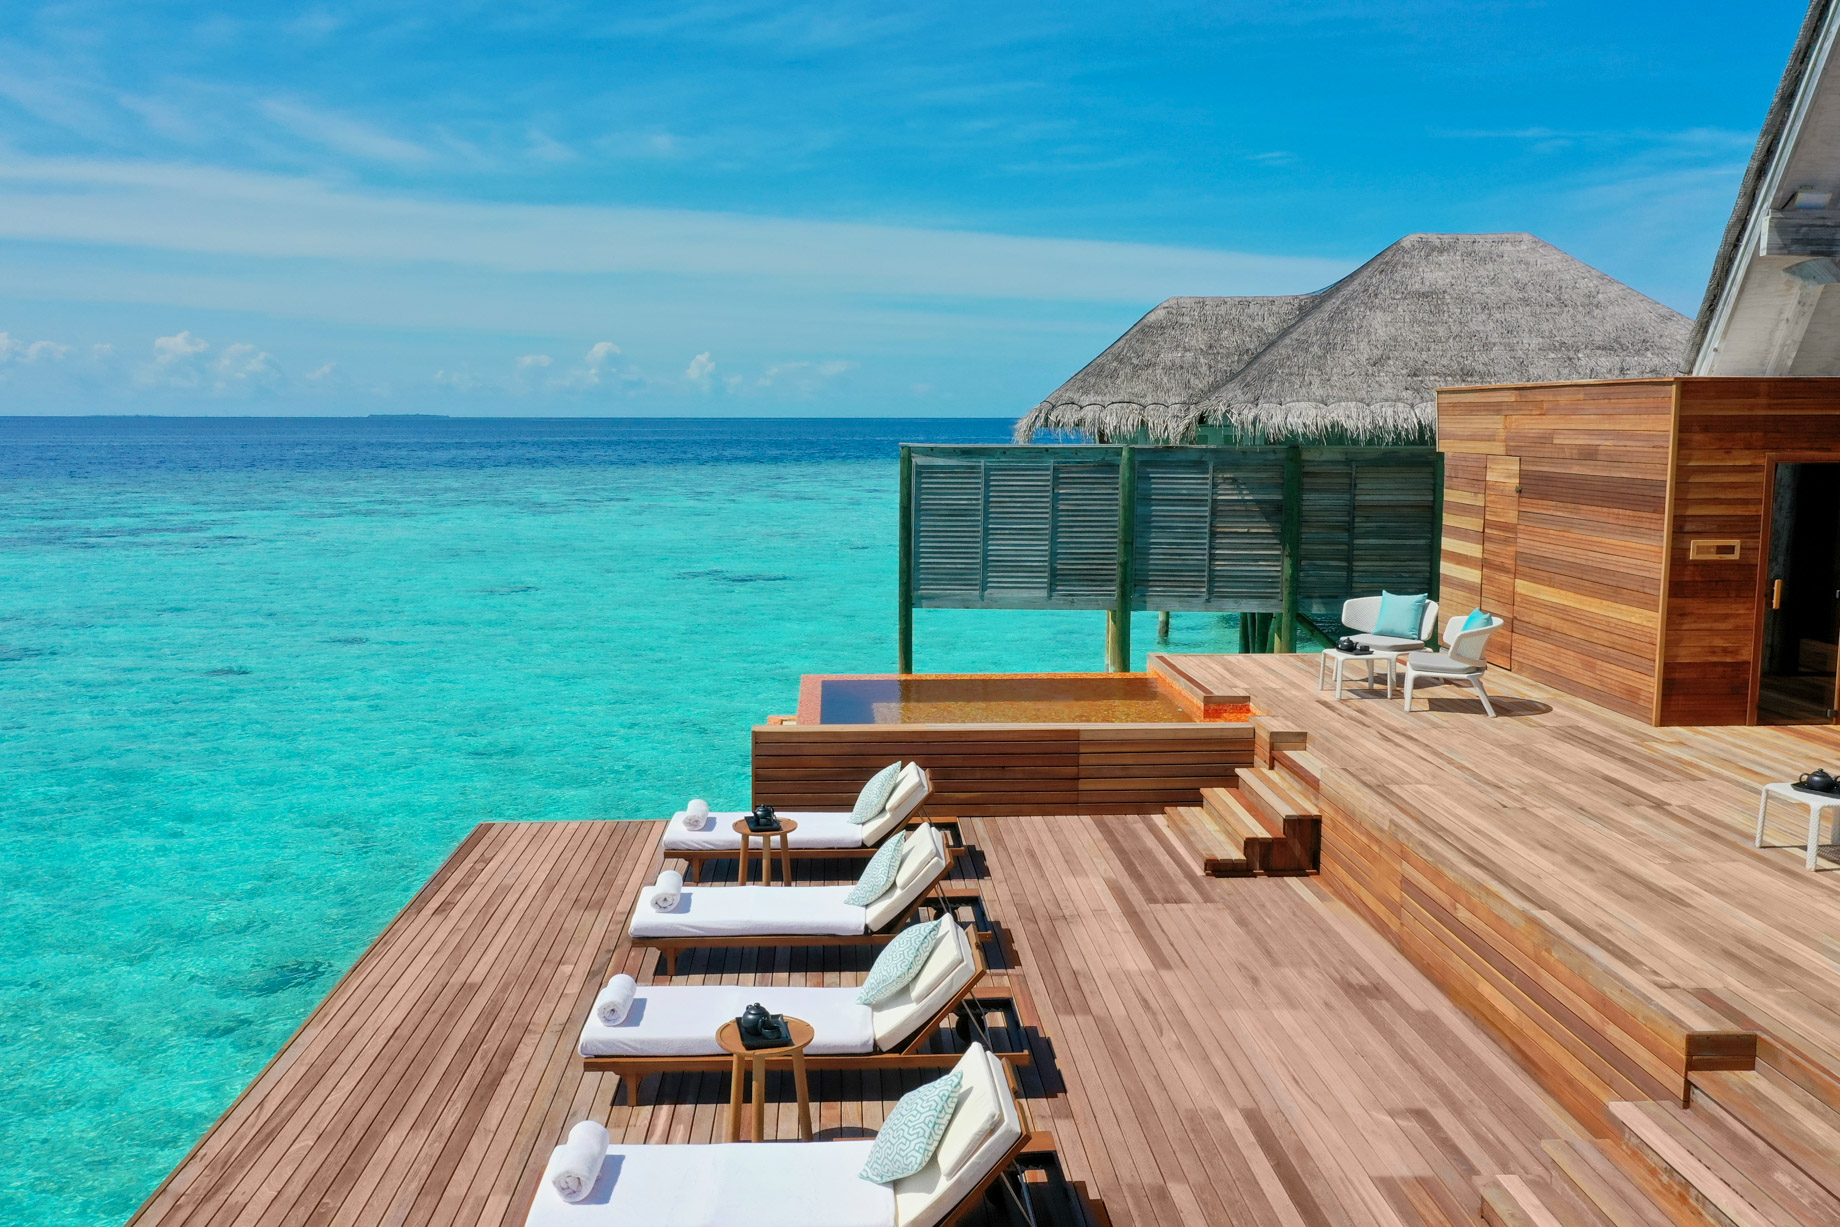 Anantara Kihavah Maldives Villas Resort – Baa Atoll, Maldives – Spa Overwater Relaxation Deck